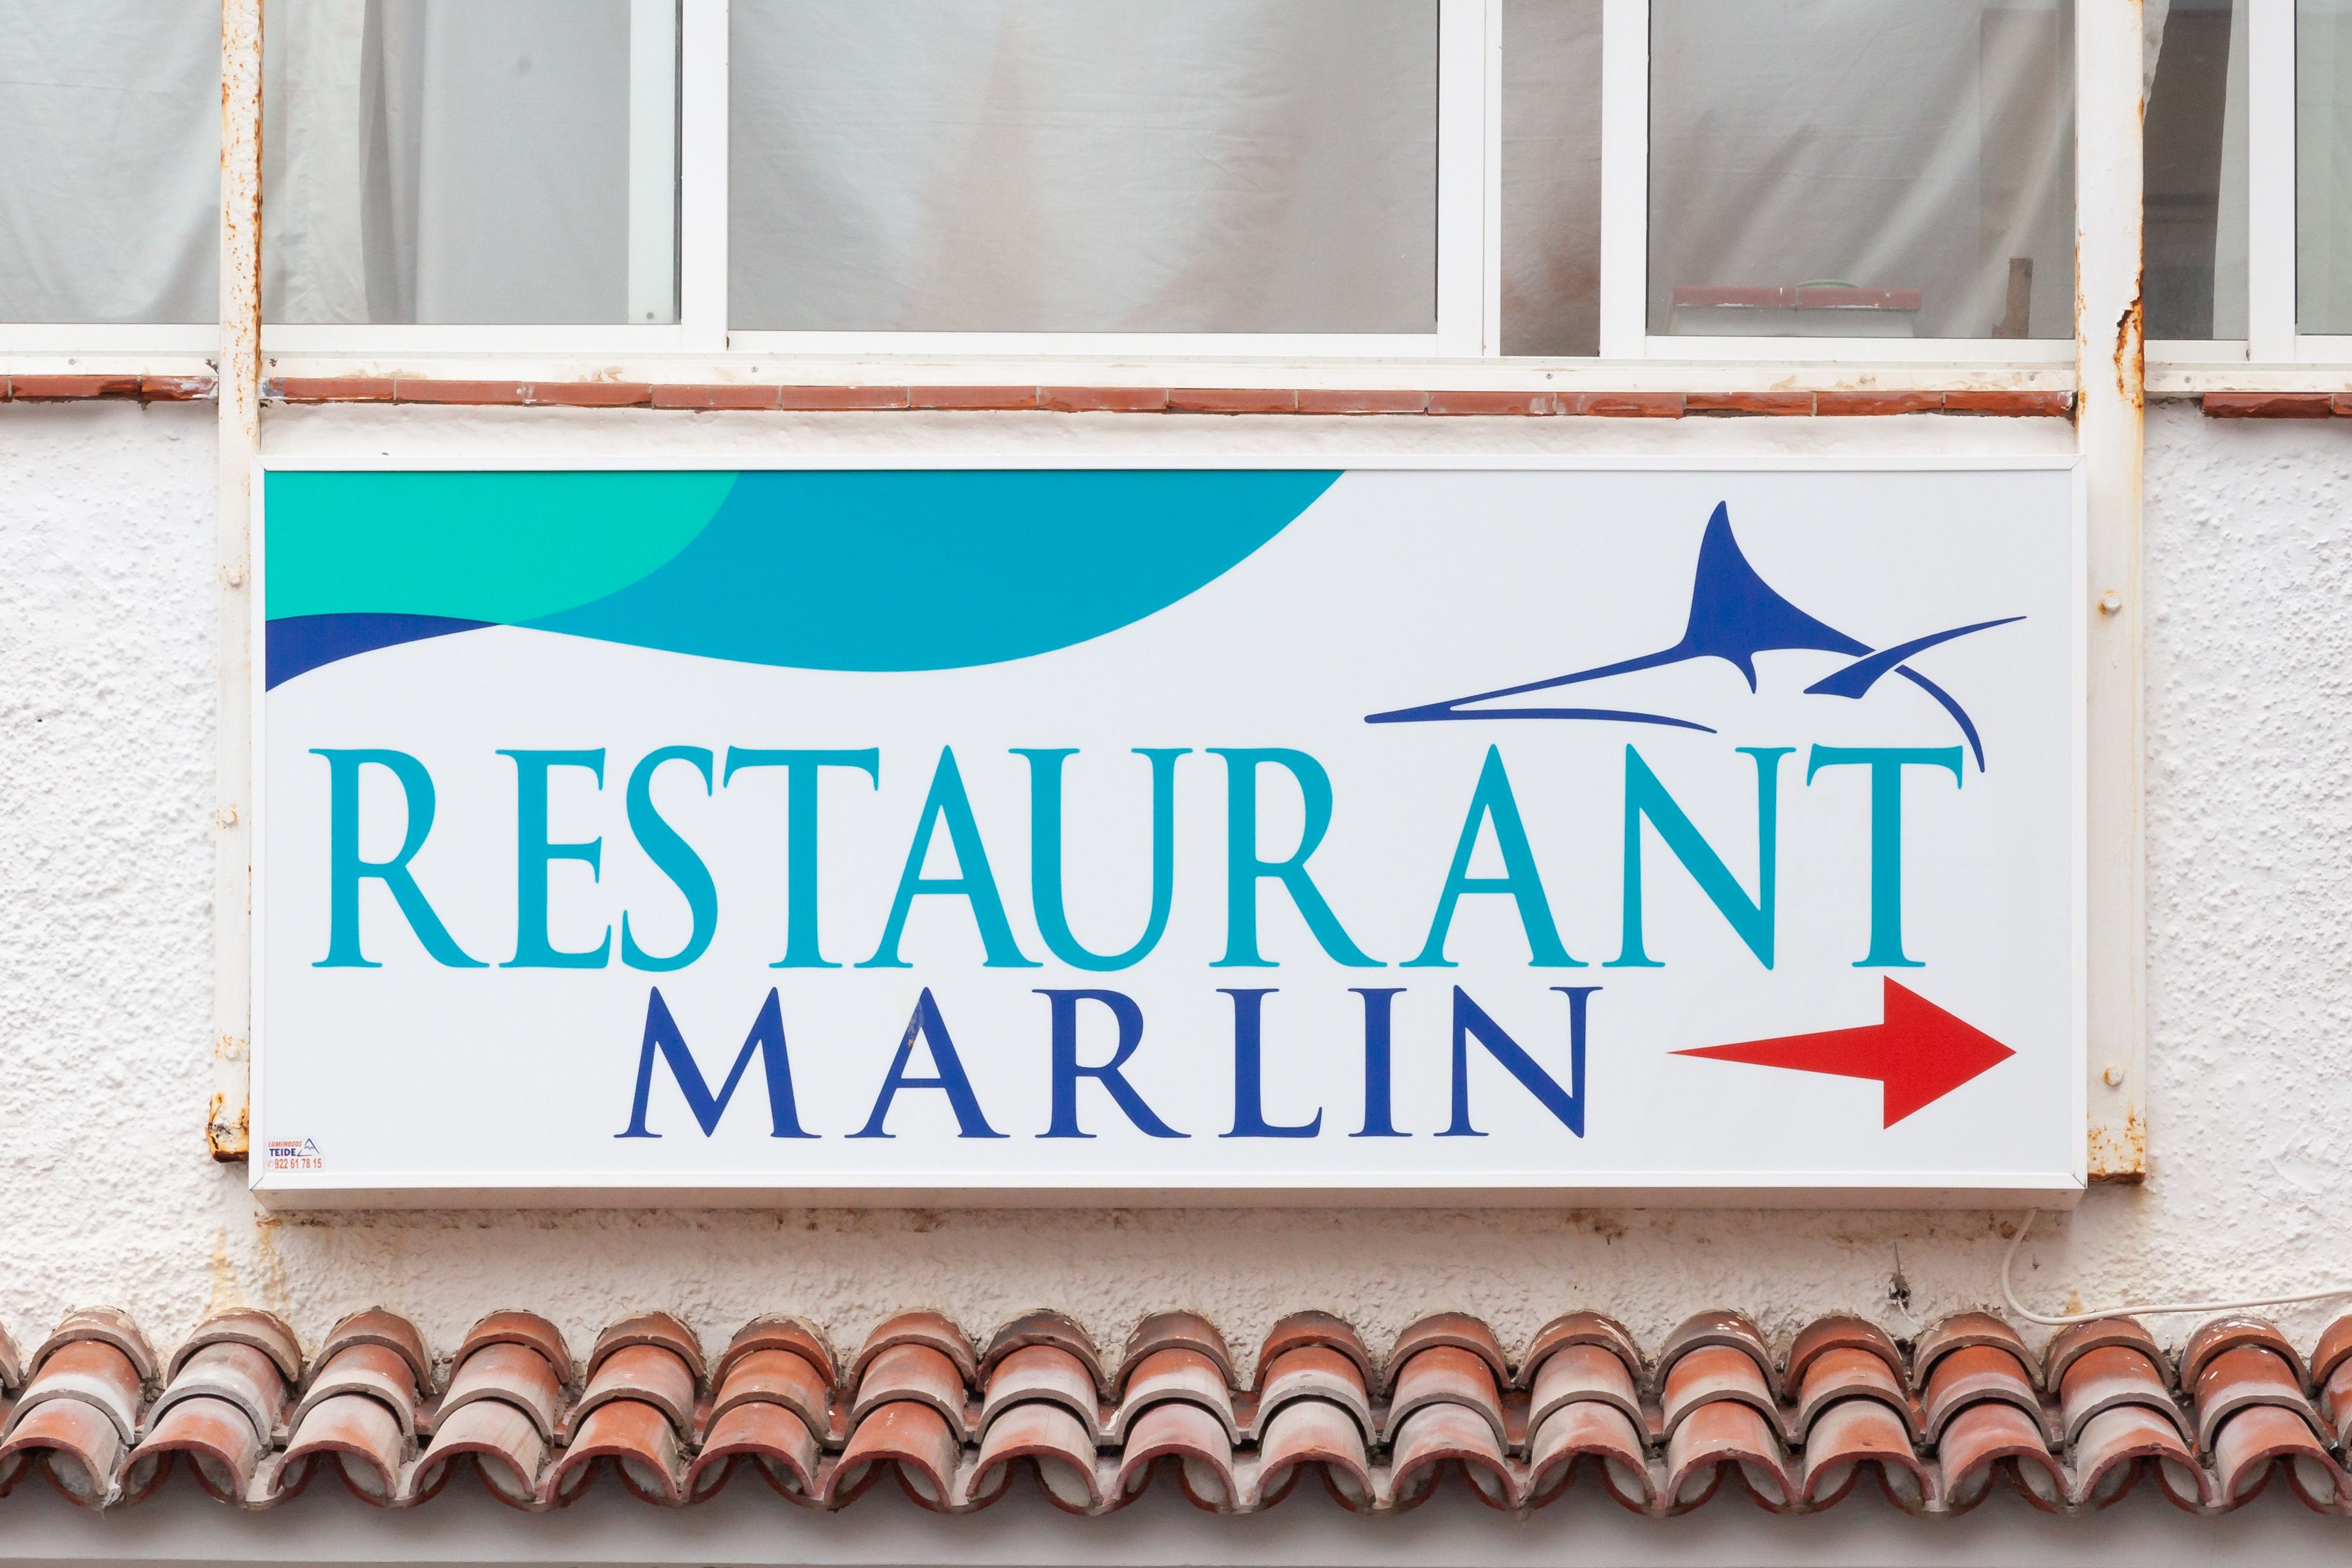 Foto 12 de Restaurante en Puerto de la Cruz | Restaurante Marlin